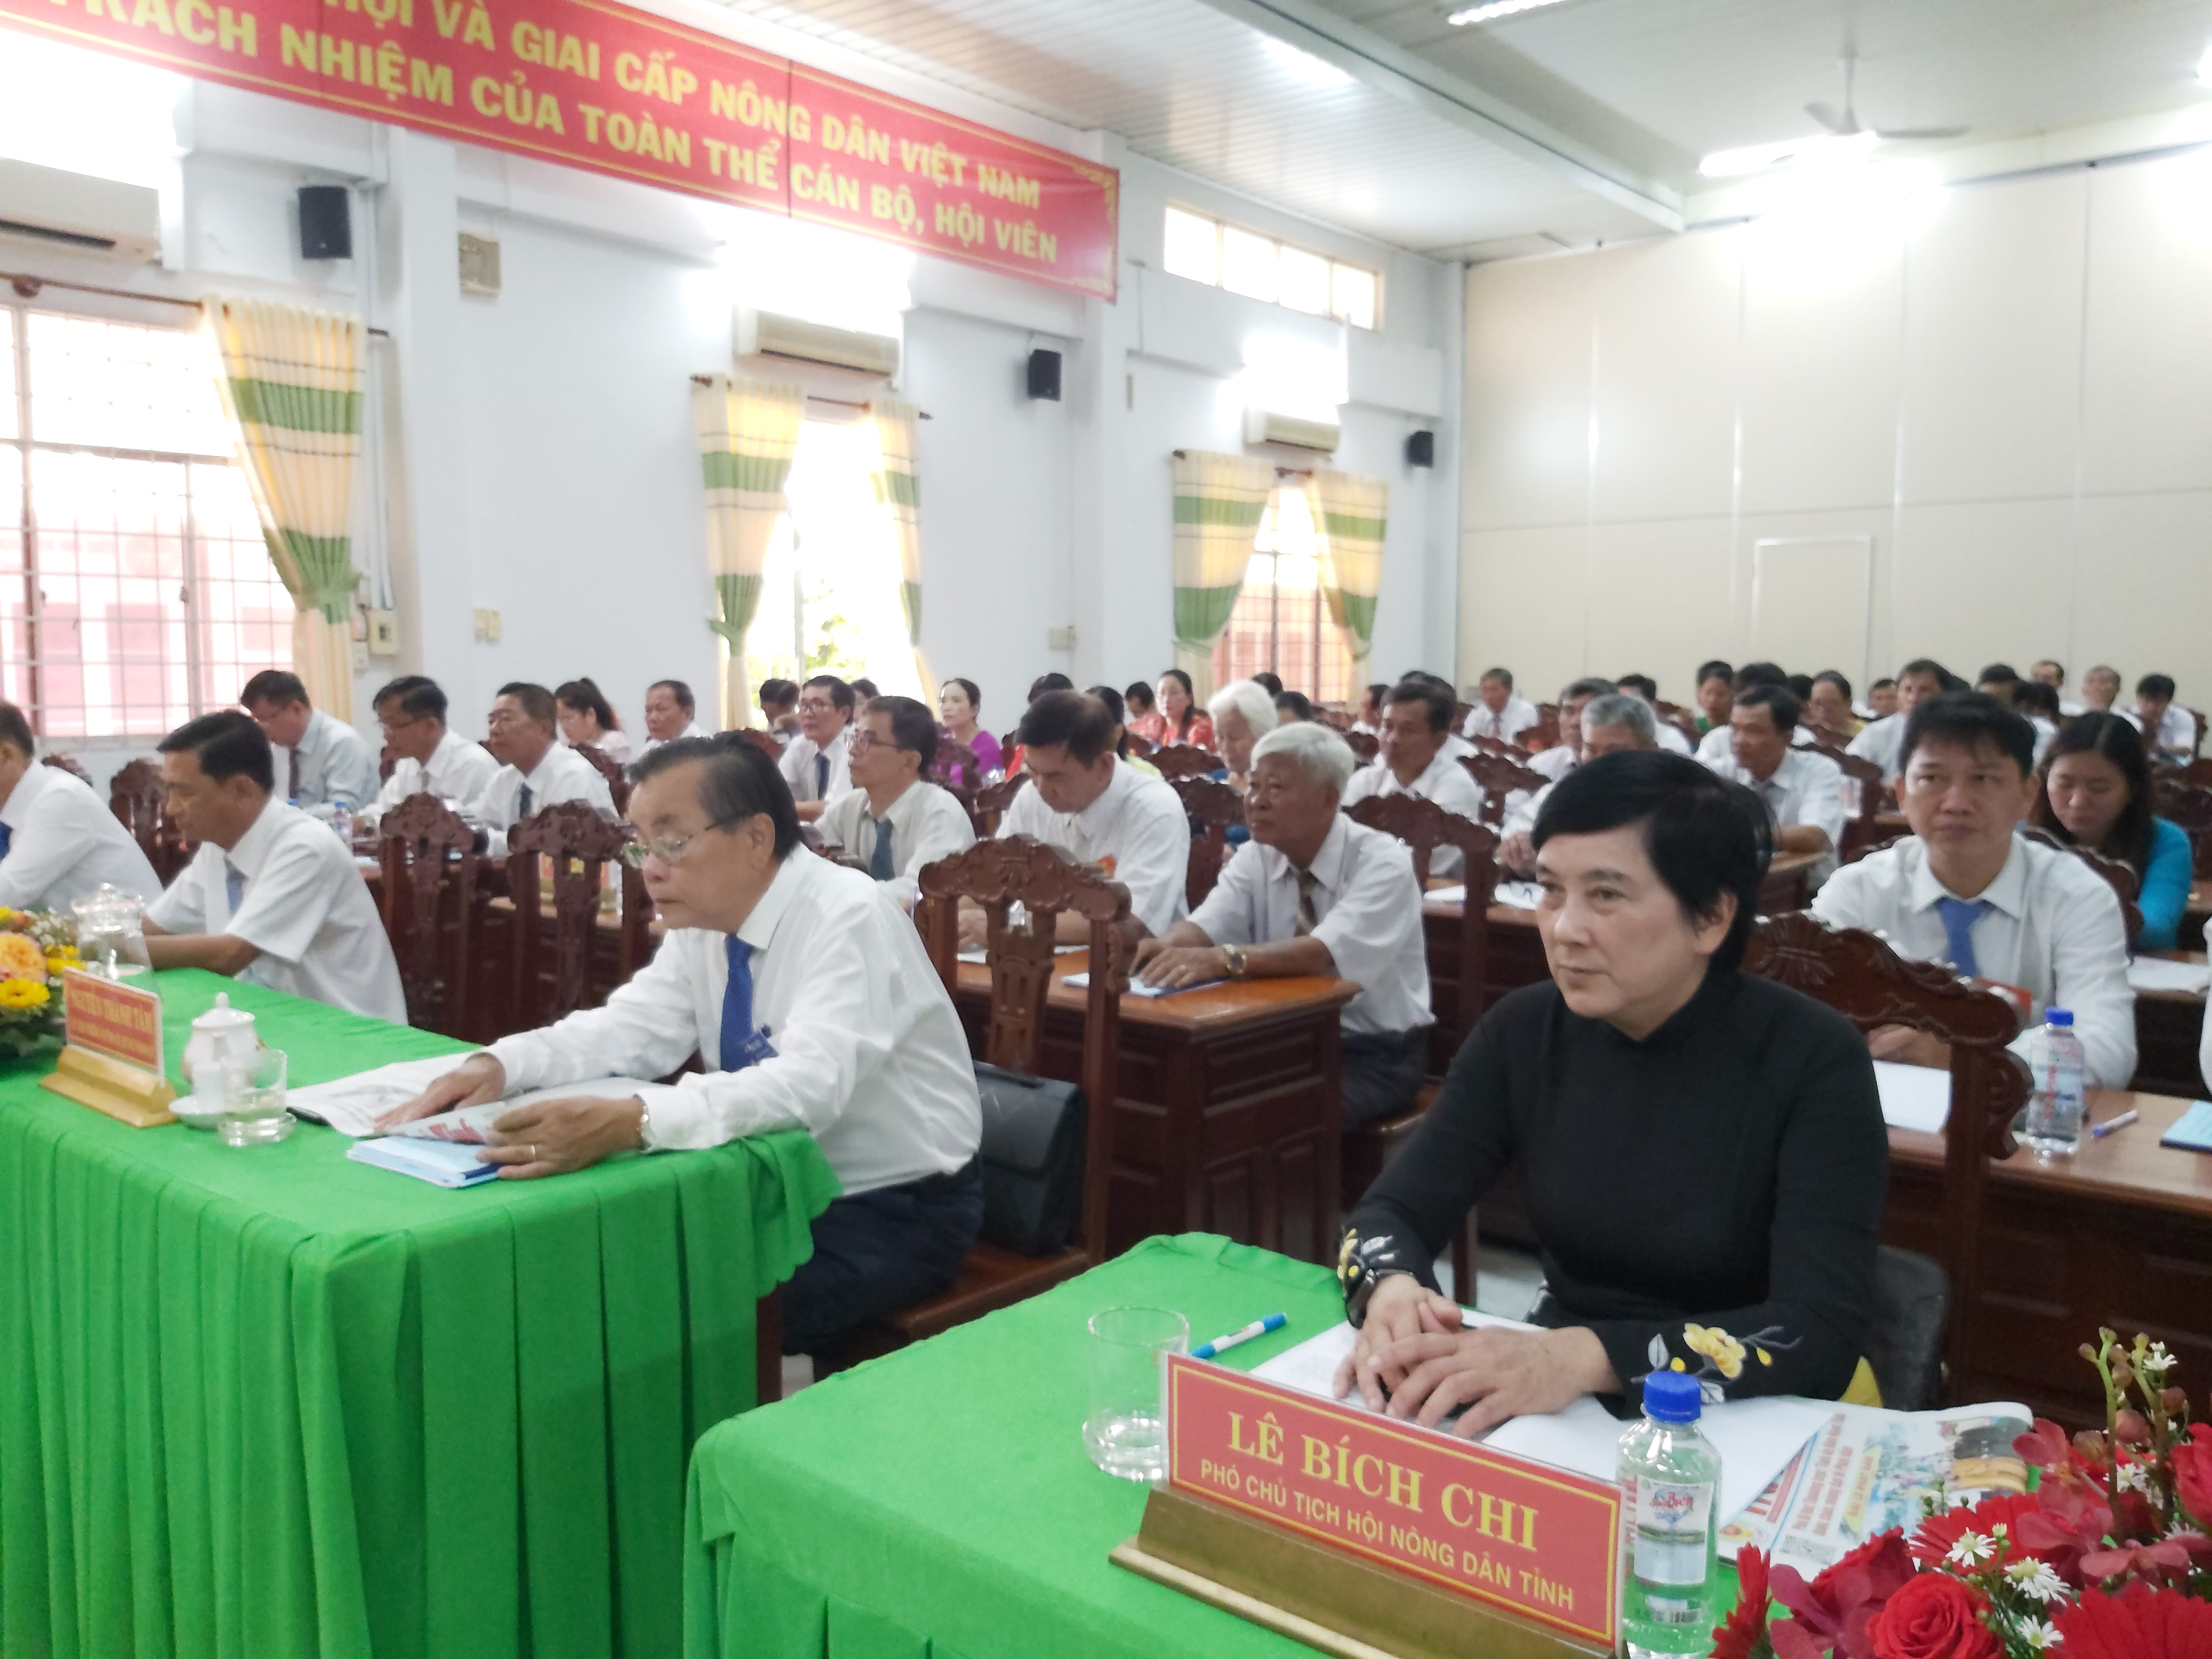 Hội Nông dân thành phố Trà Vinh: Đổi mới - sáng tạo - hội nhập - phát triển